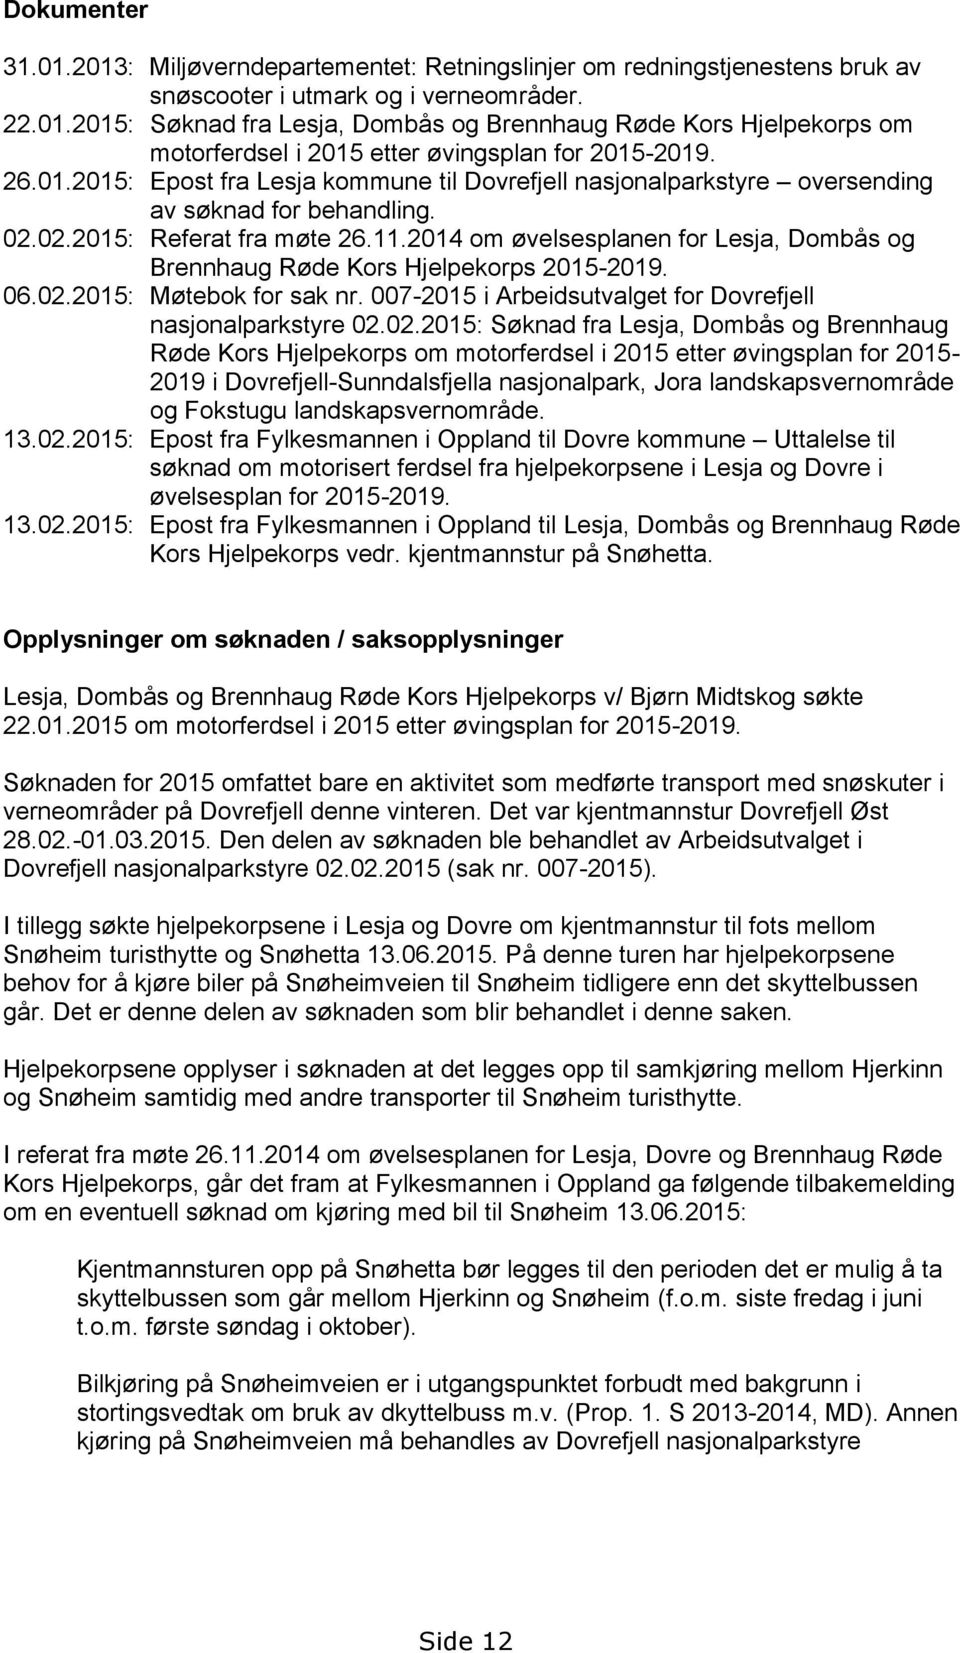 2014 om øvelsesplanen for Lesja, Dombås og Brennhaug Røde Kors Hjelpekorps 2015-2019. 06.02.